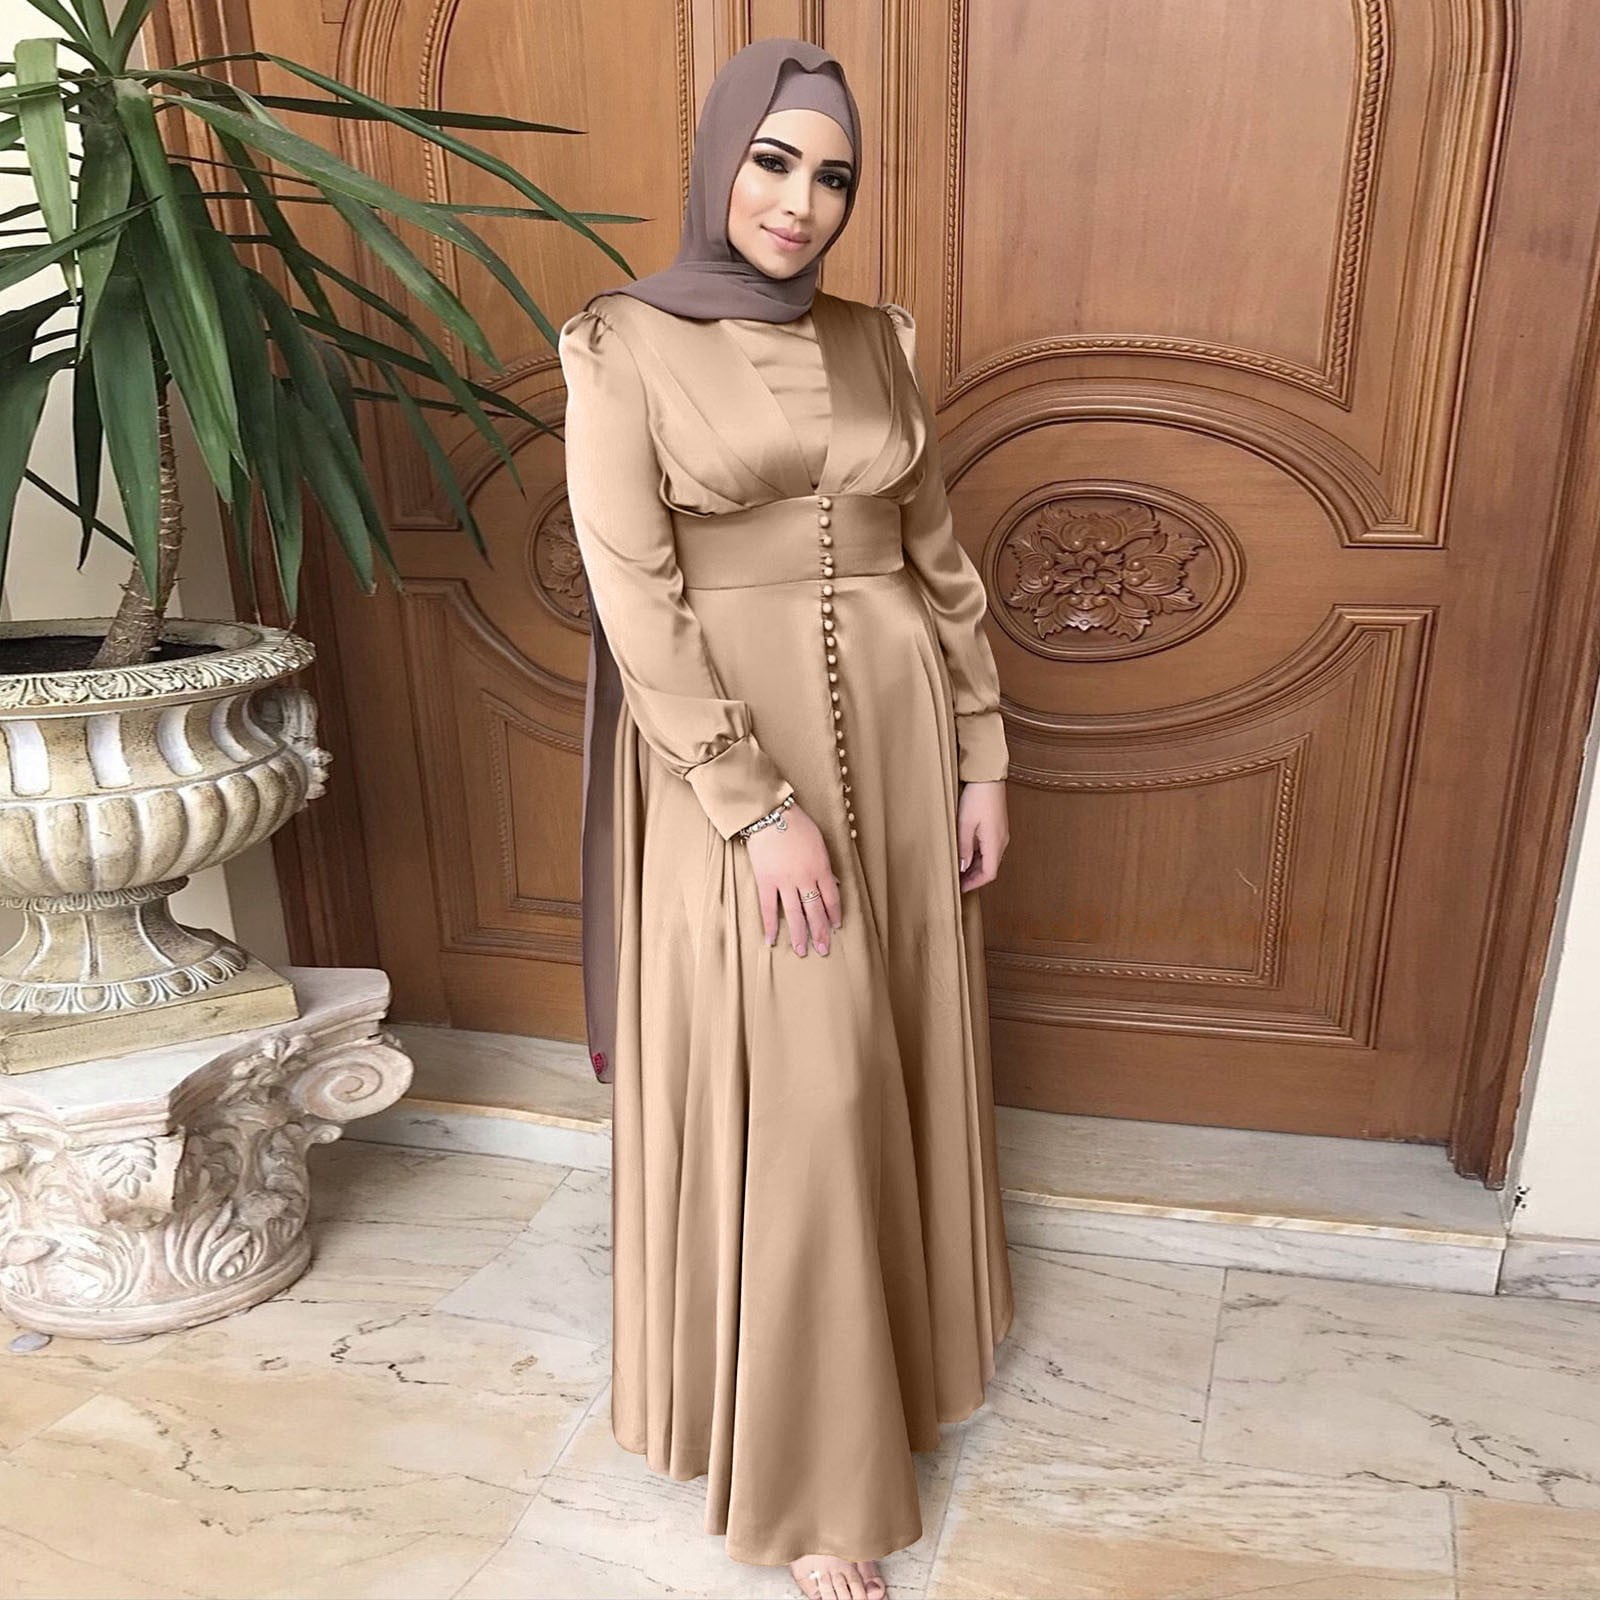 women’s muslim dress